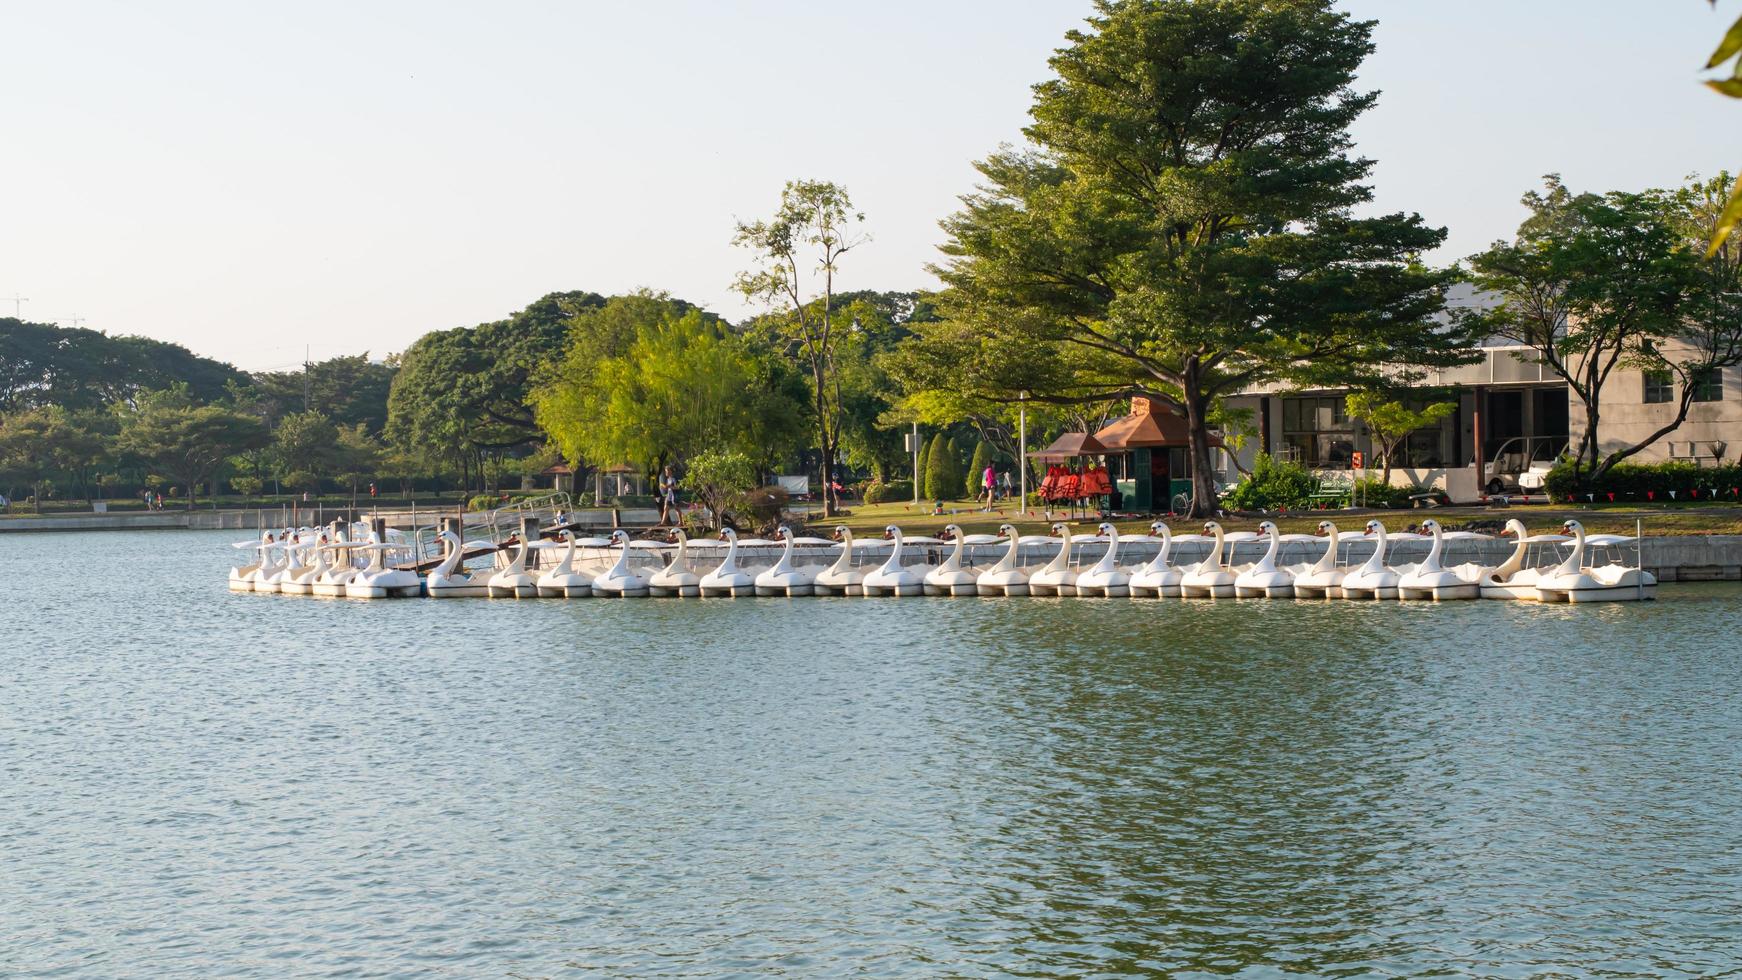 pato de barco giratório alinhando-se com pessoas girando pato de barco giratório no lago de armazenamento de água ou reservatório no parque público suan luang rama ix. foto